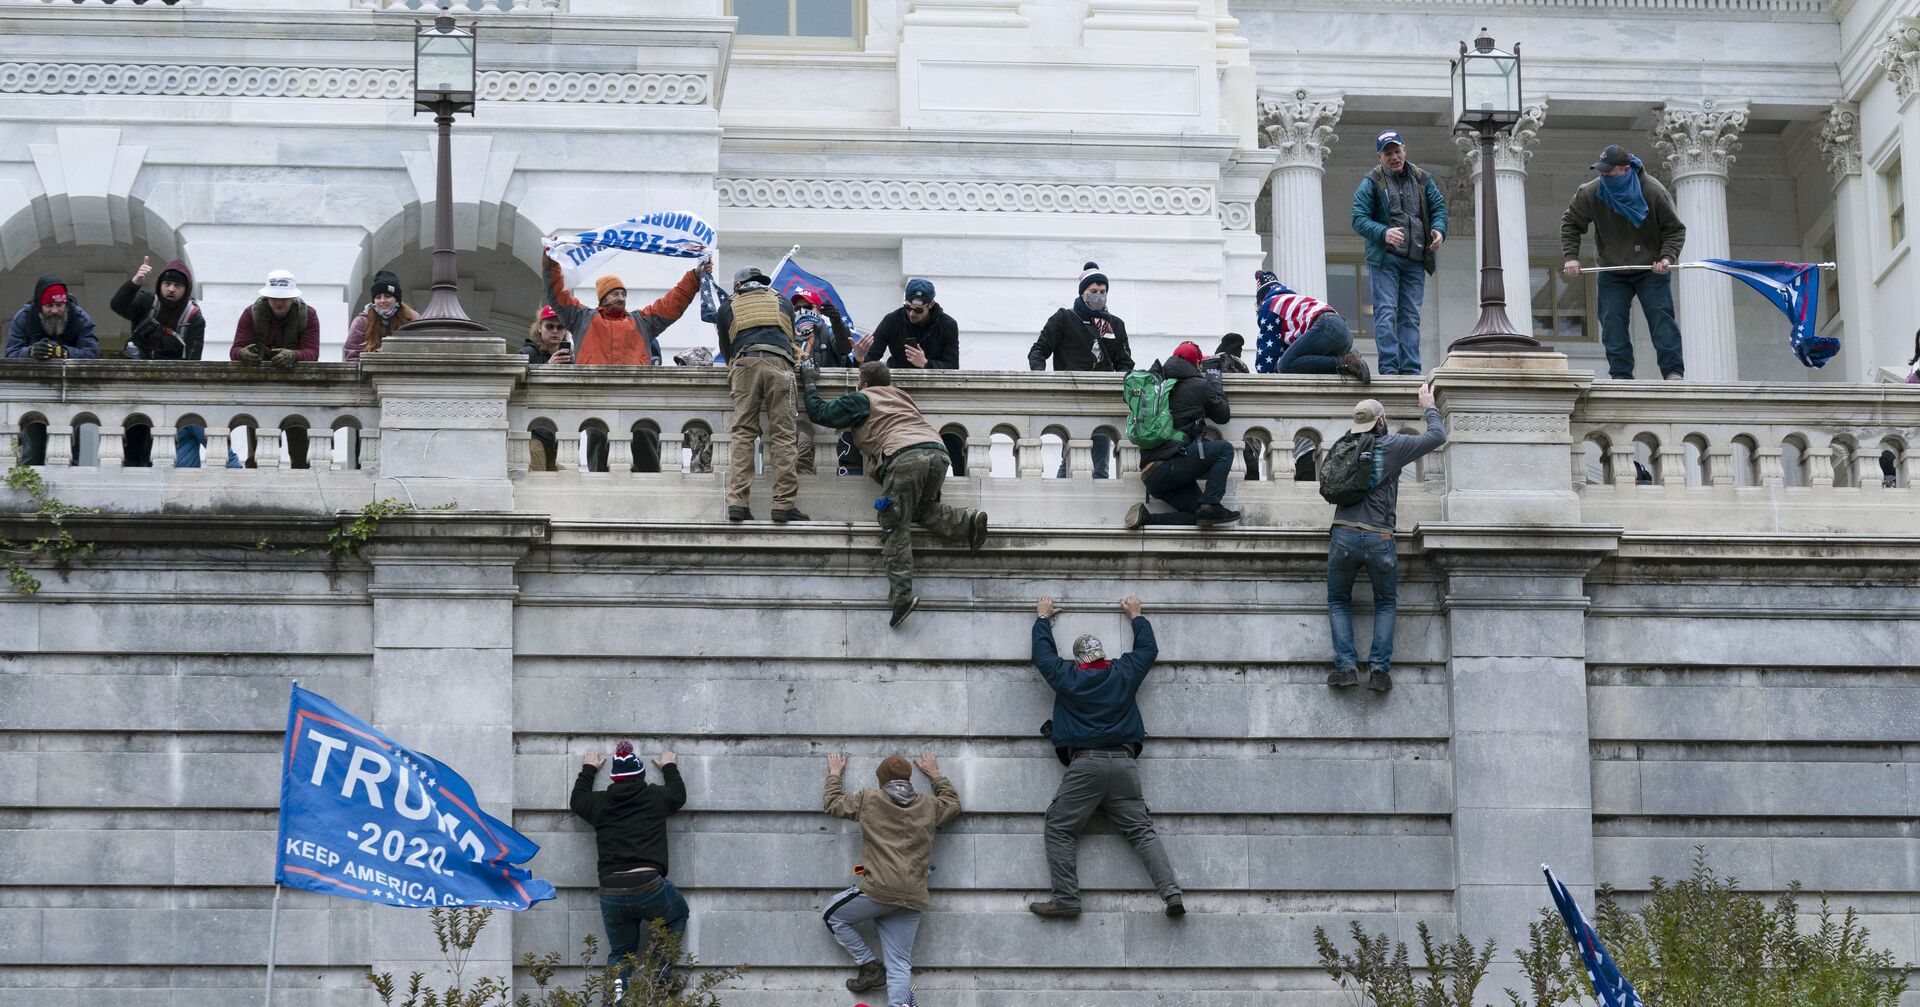 Протестующие штурмуют здание Конгресса в США 6.1.2021 - ИноСМИ, 1920, 07.01.2021